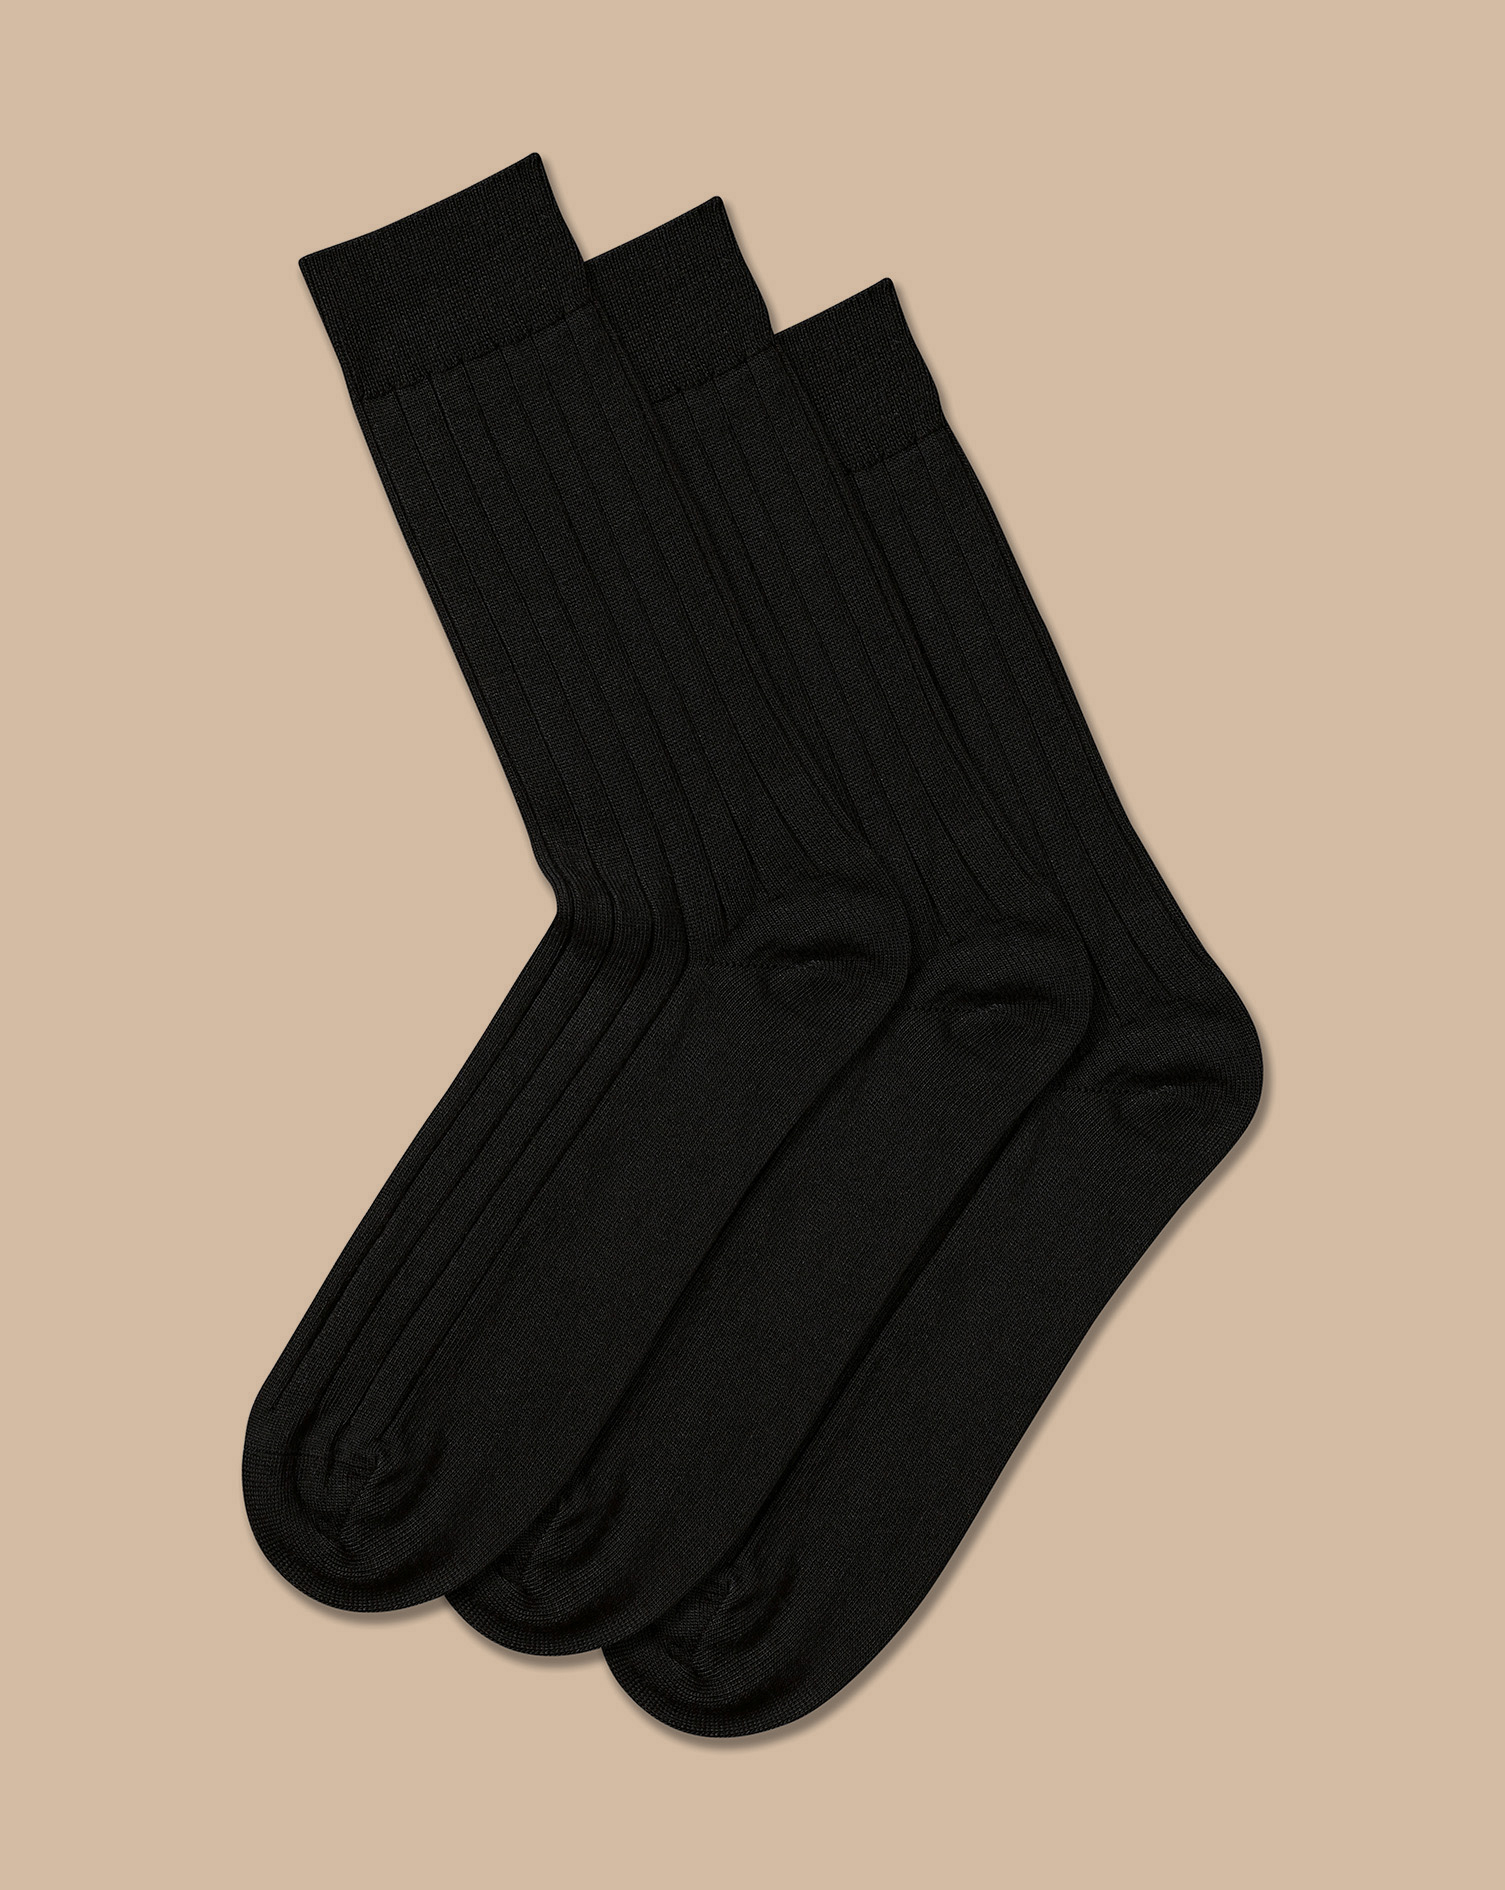 Men's Charles Tyrwhitt Merino Blend 3 Pack Socks - Black Size 10.5-13 Wool
